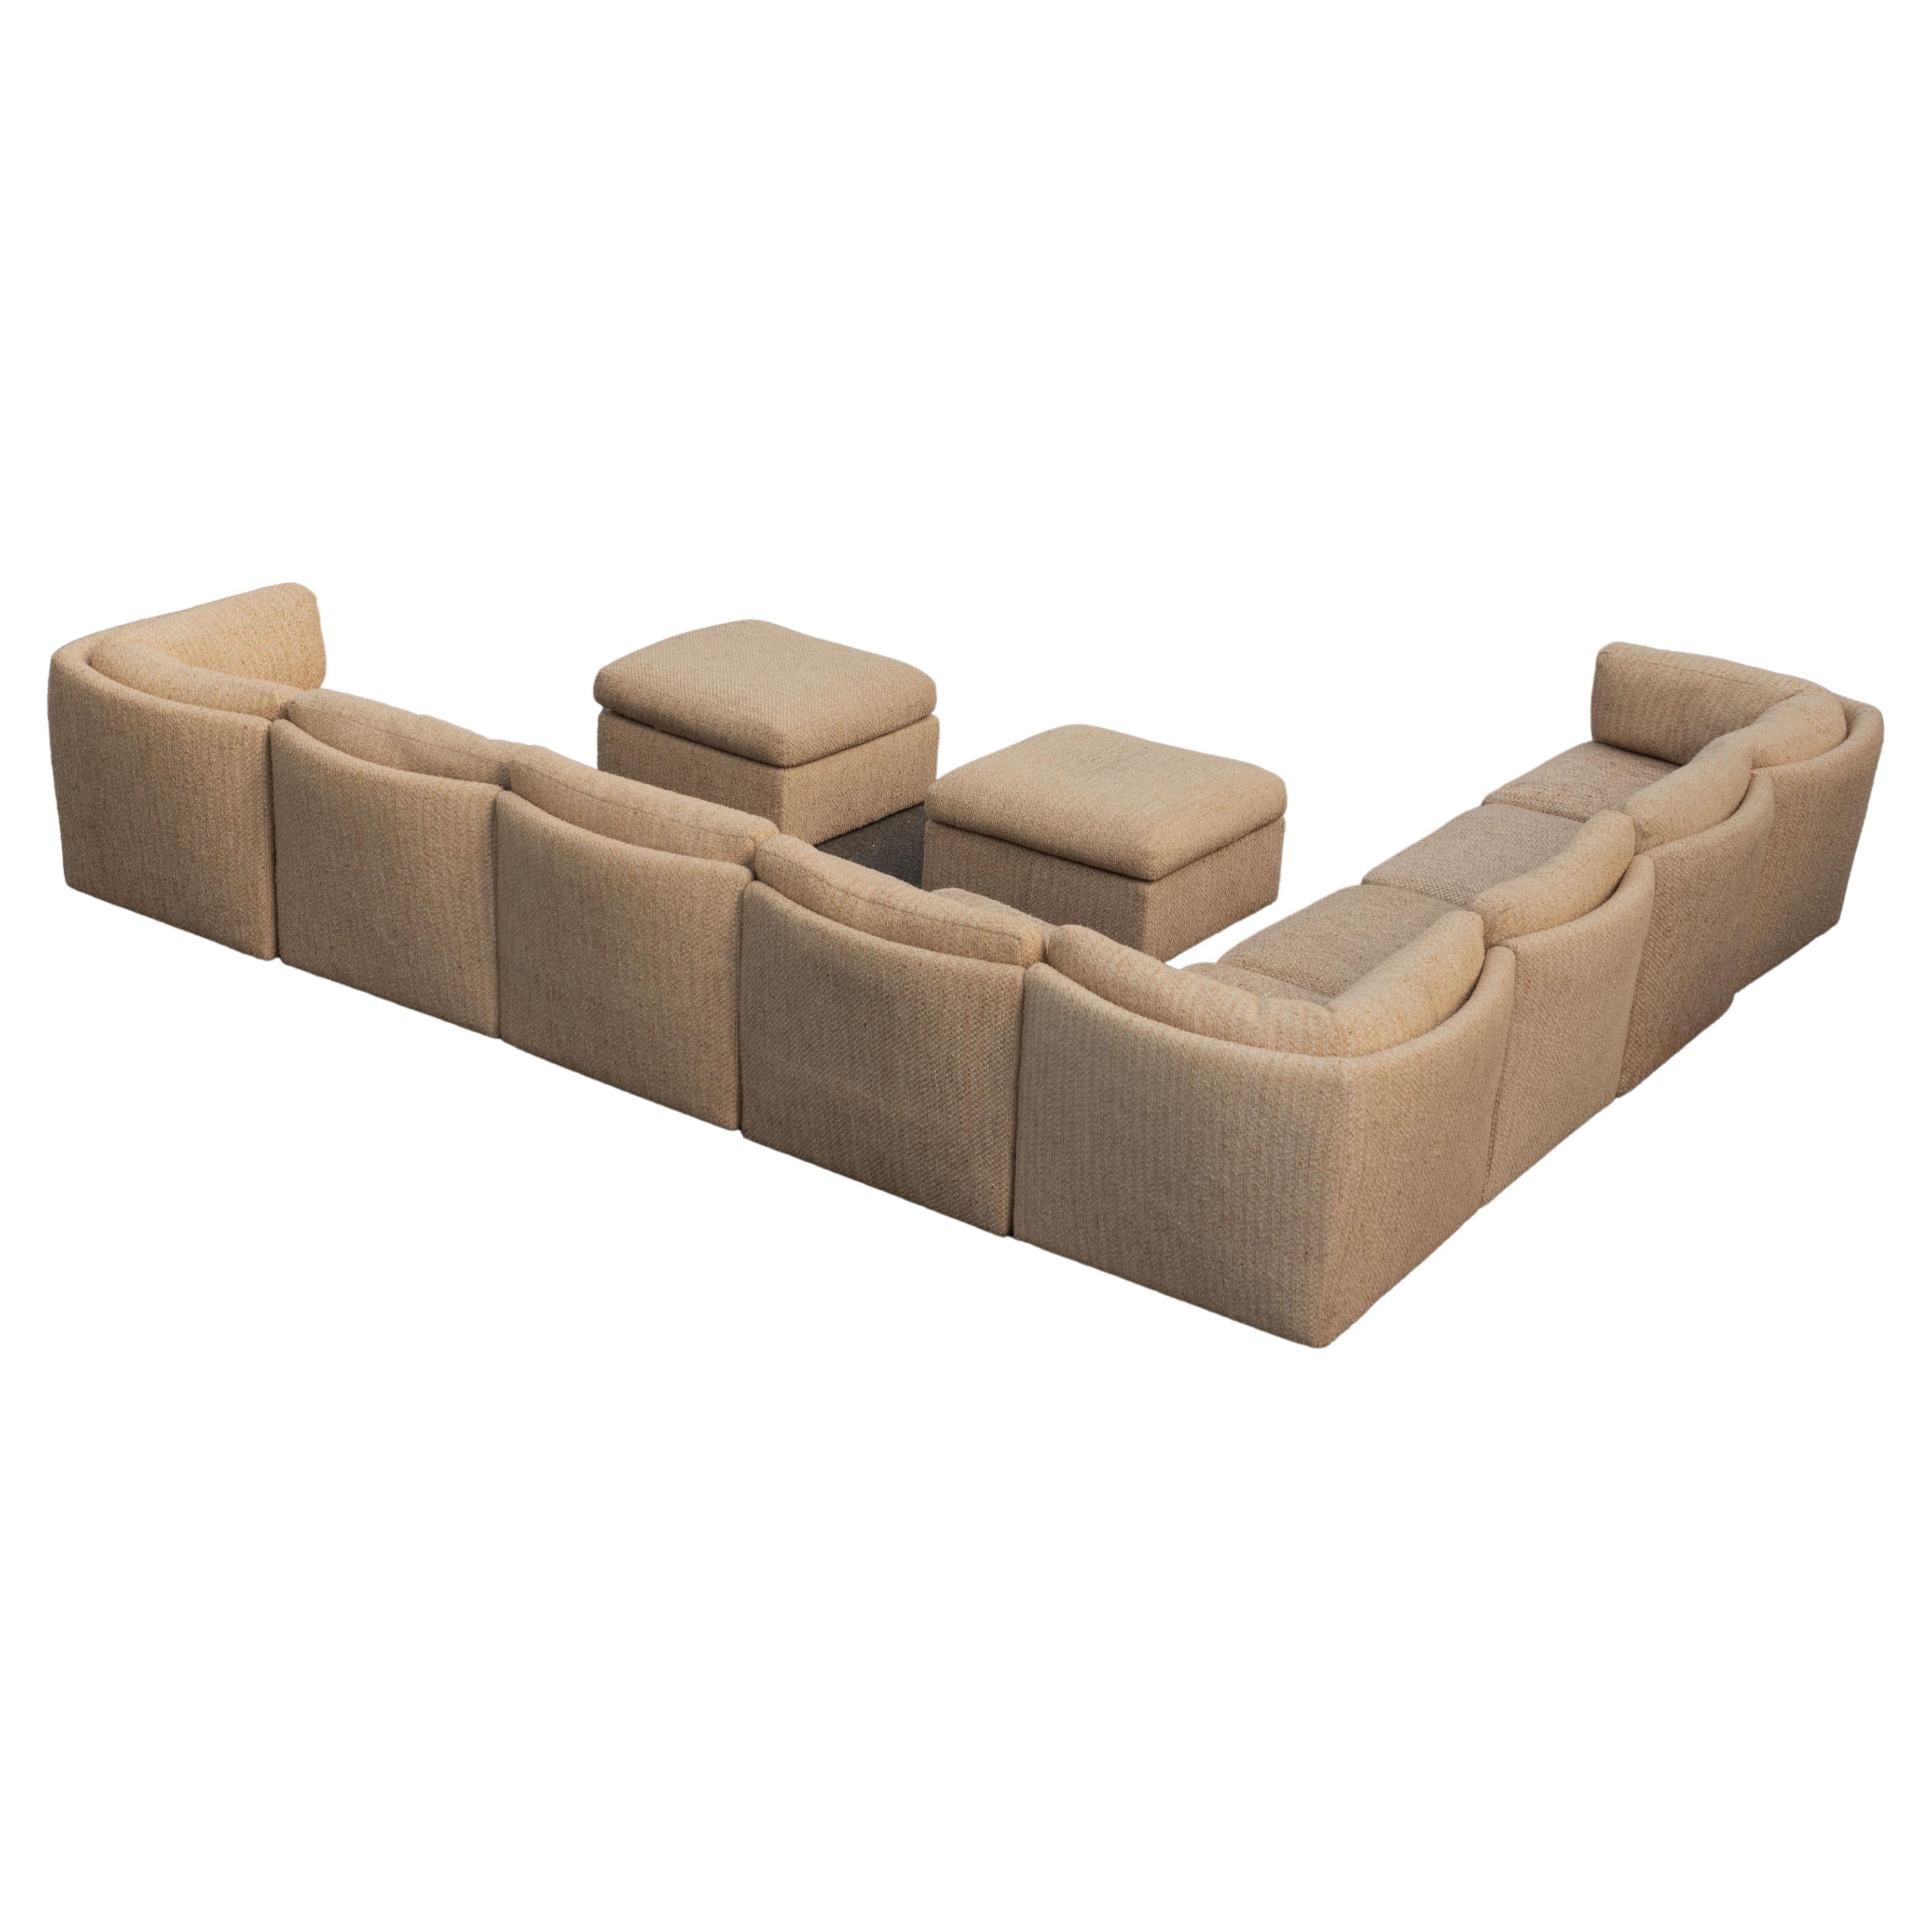 Milo Baughman for Thayer Coggin 10 Piece Curved Modular Sectional Sofa